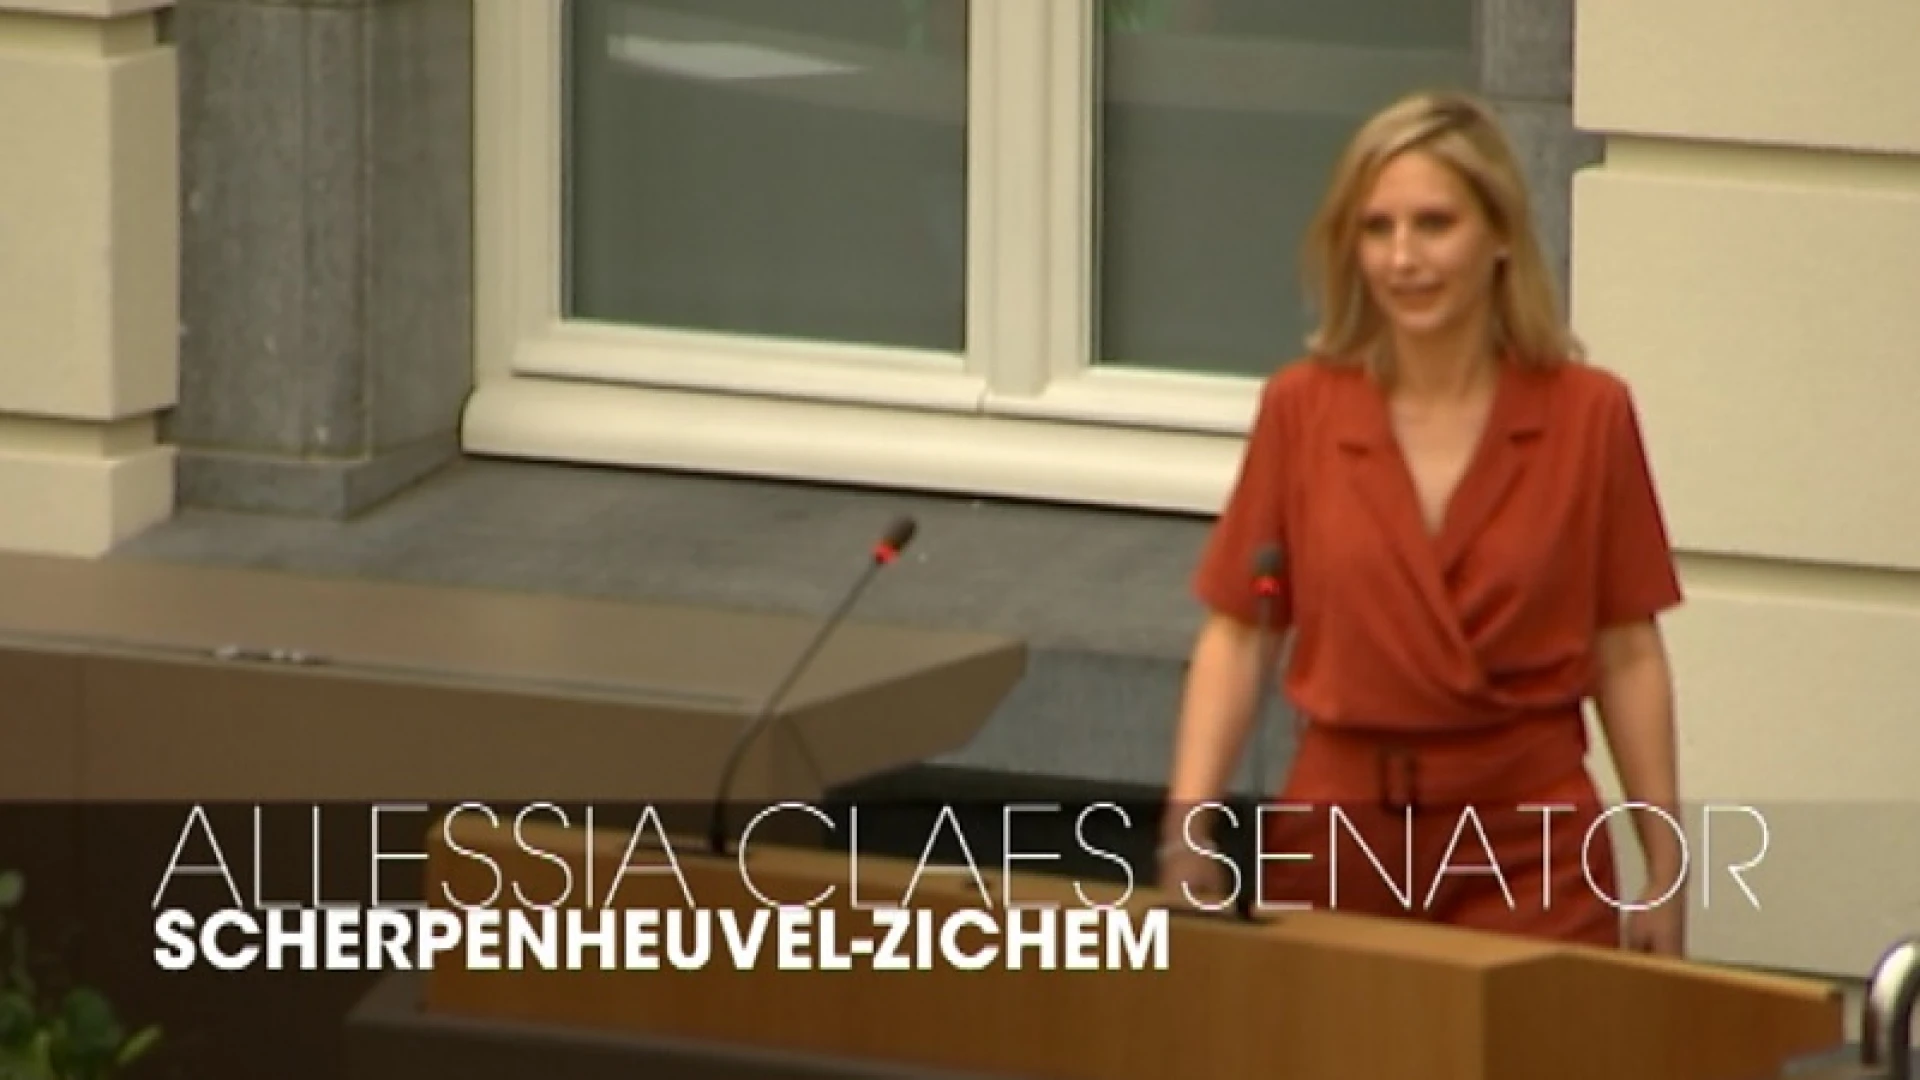 Allessia Claes uit Scherpenheuvel wordt deelstaatsenator